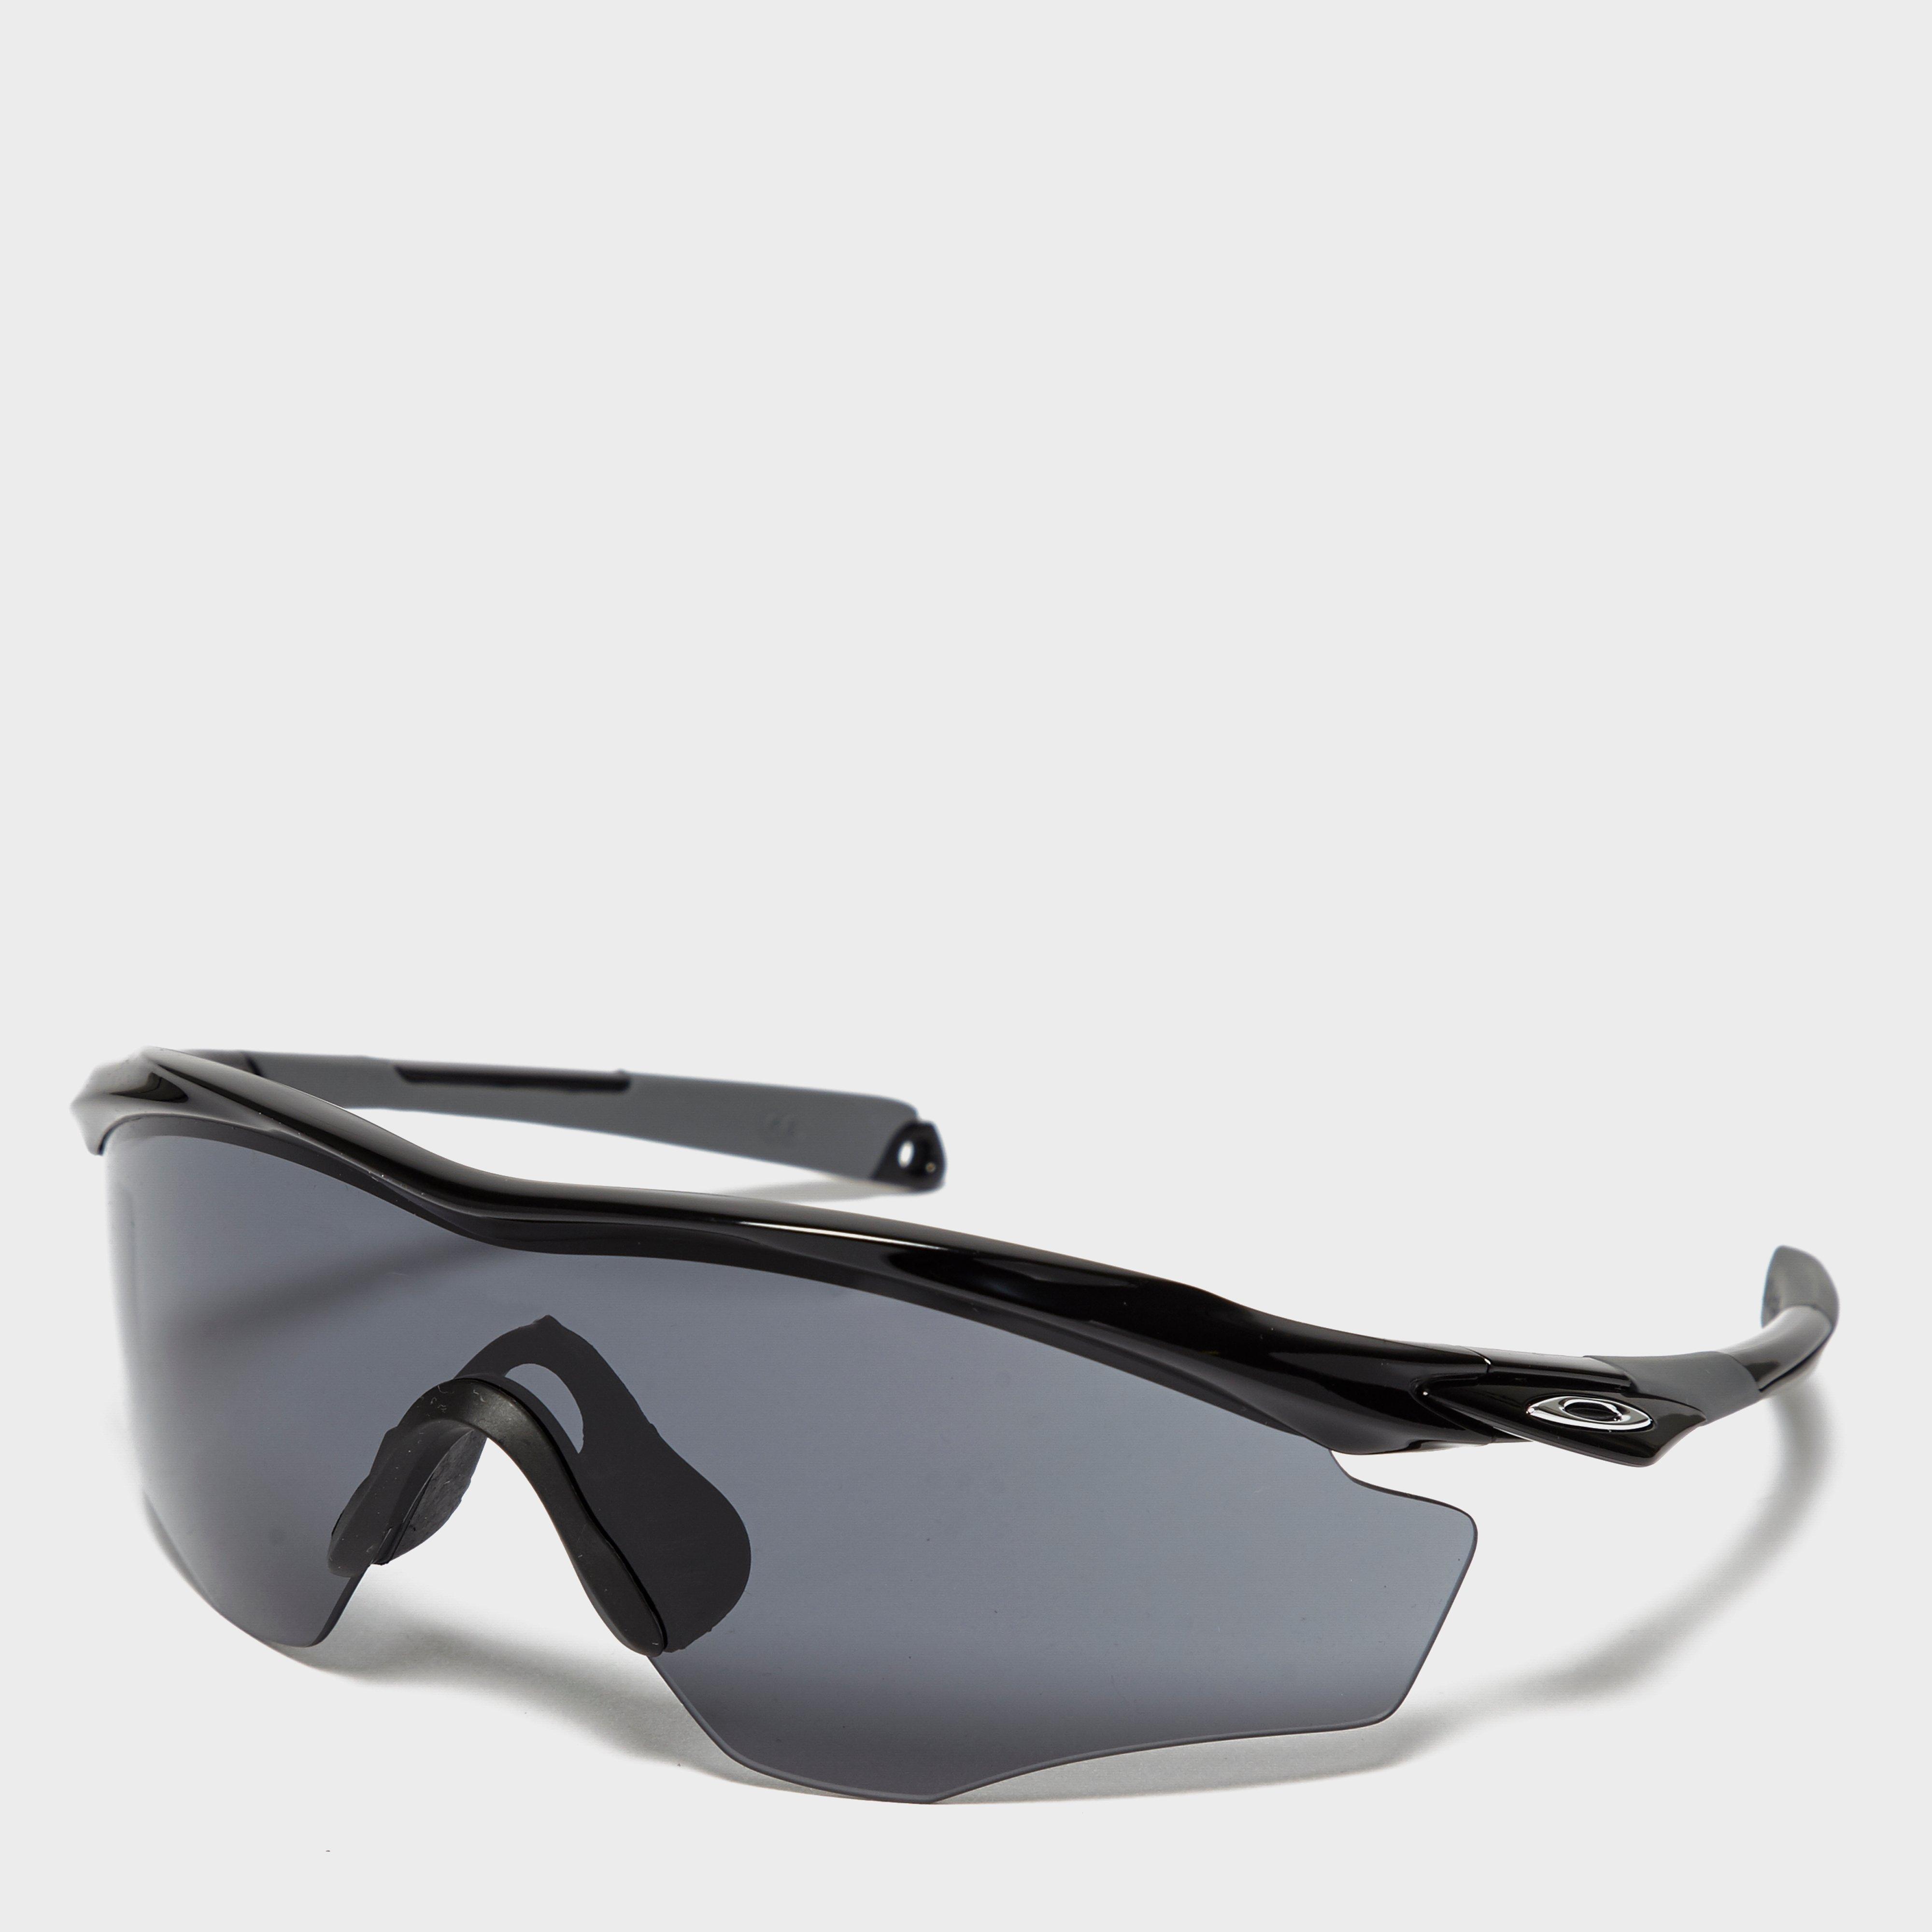  Oakley M2 Frame XL Sunglasses, Grey